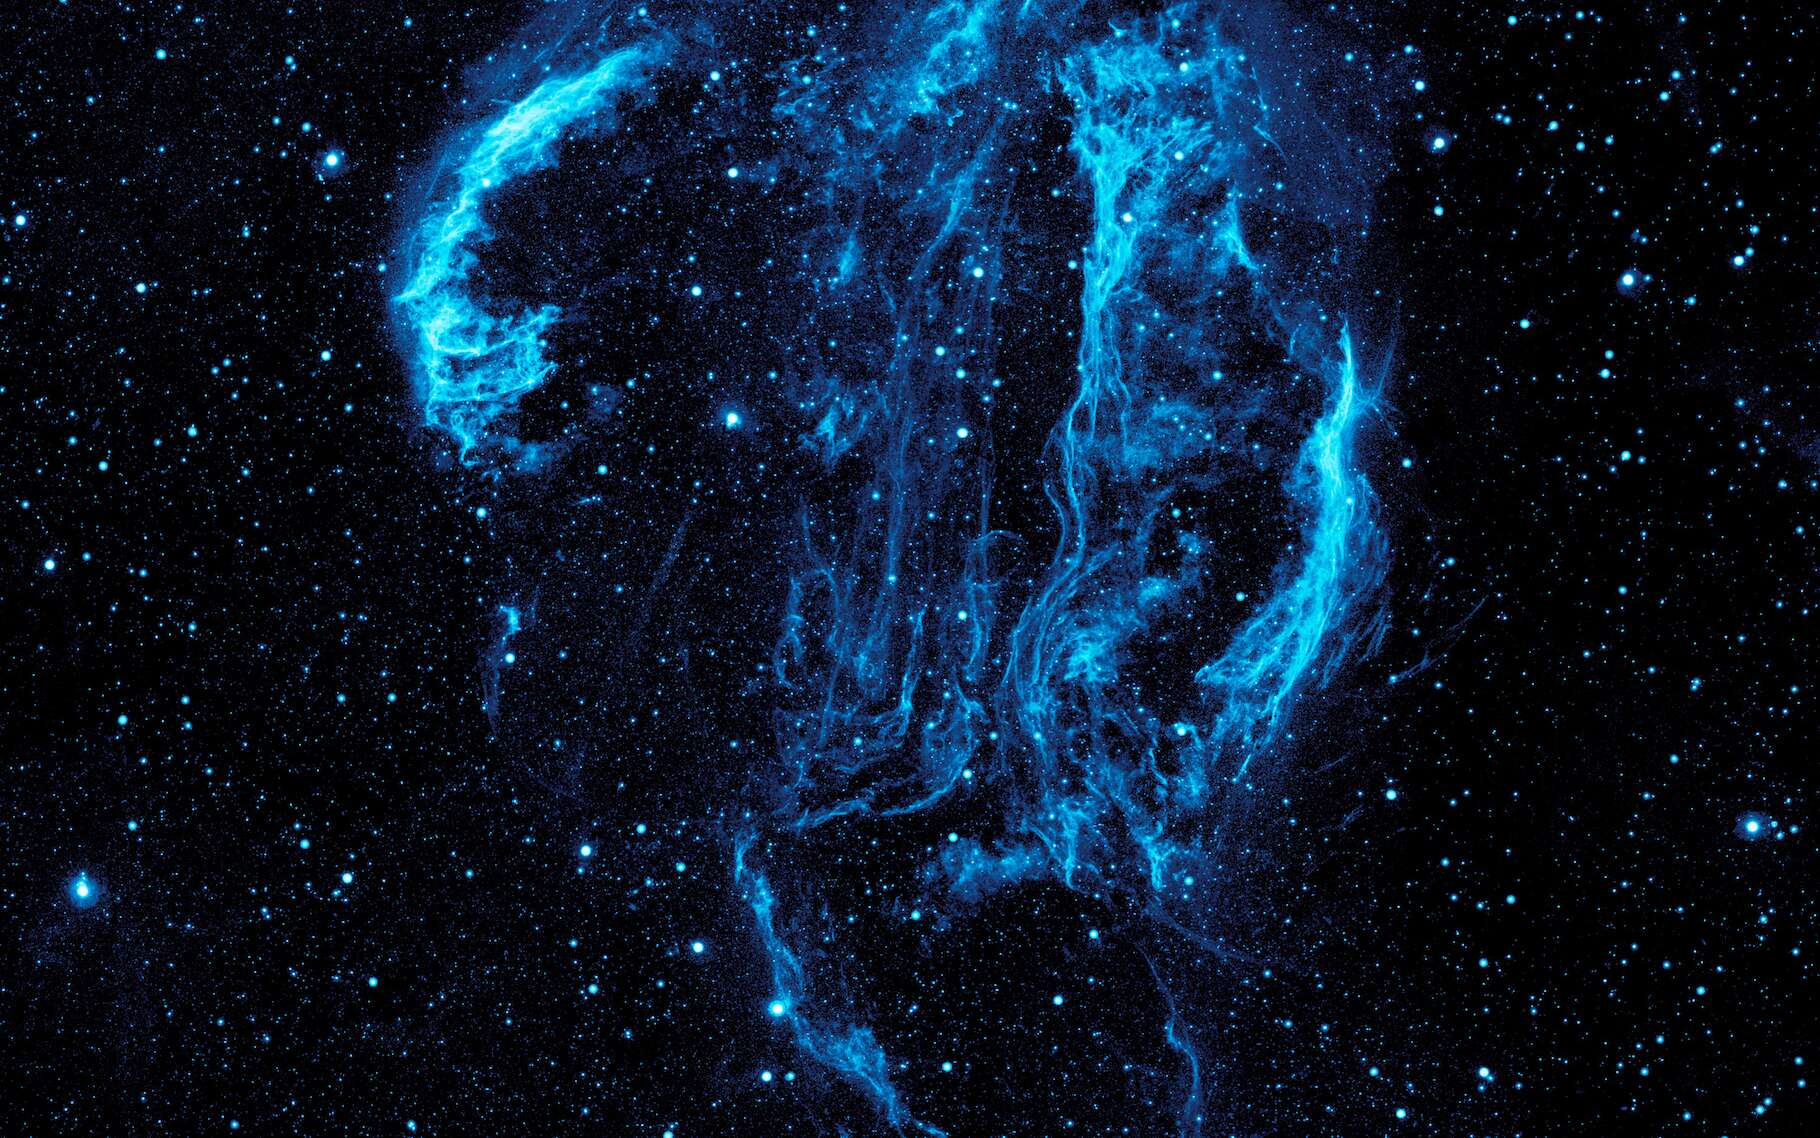 Admirez l'expansion des restes d'une supernova filmée par Hubble depuis 20 ans